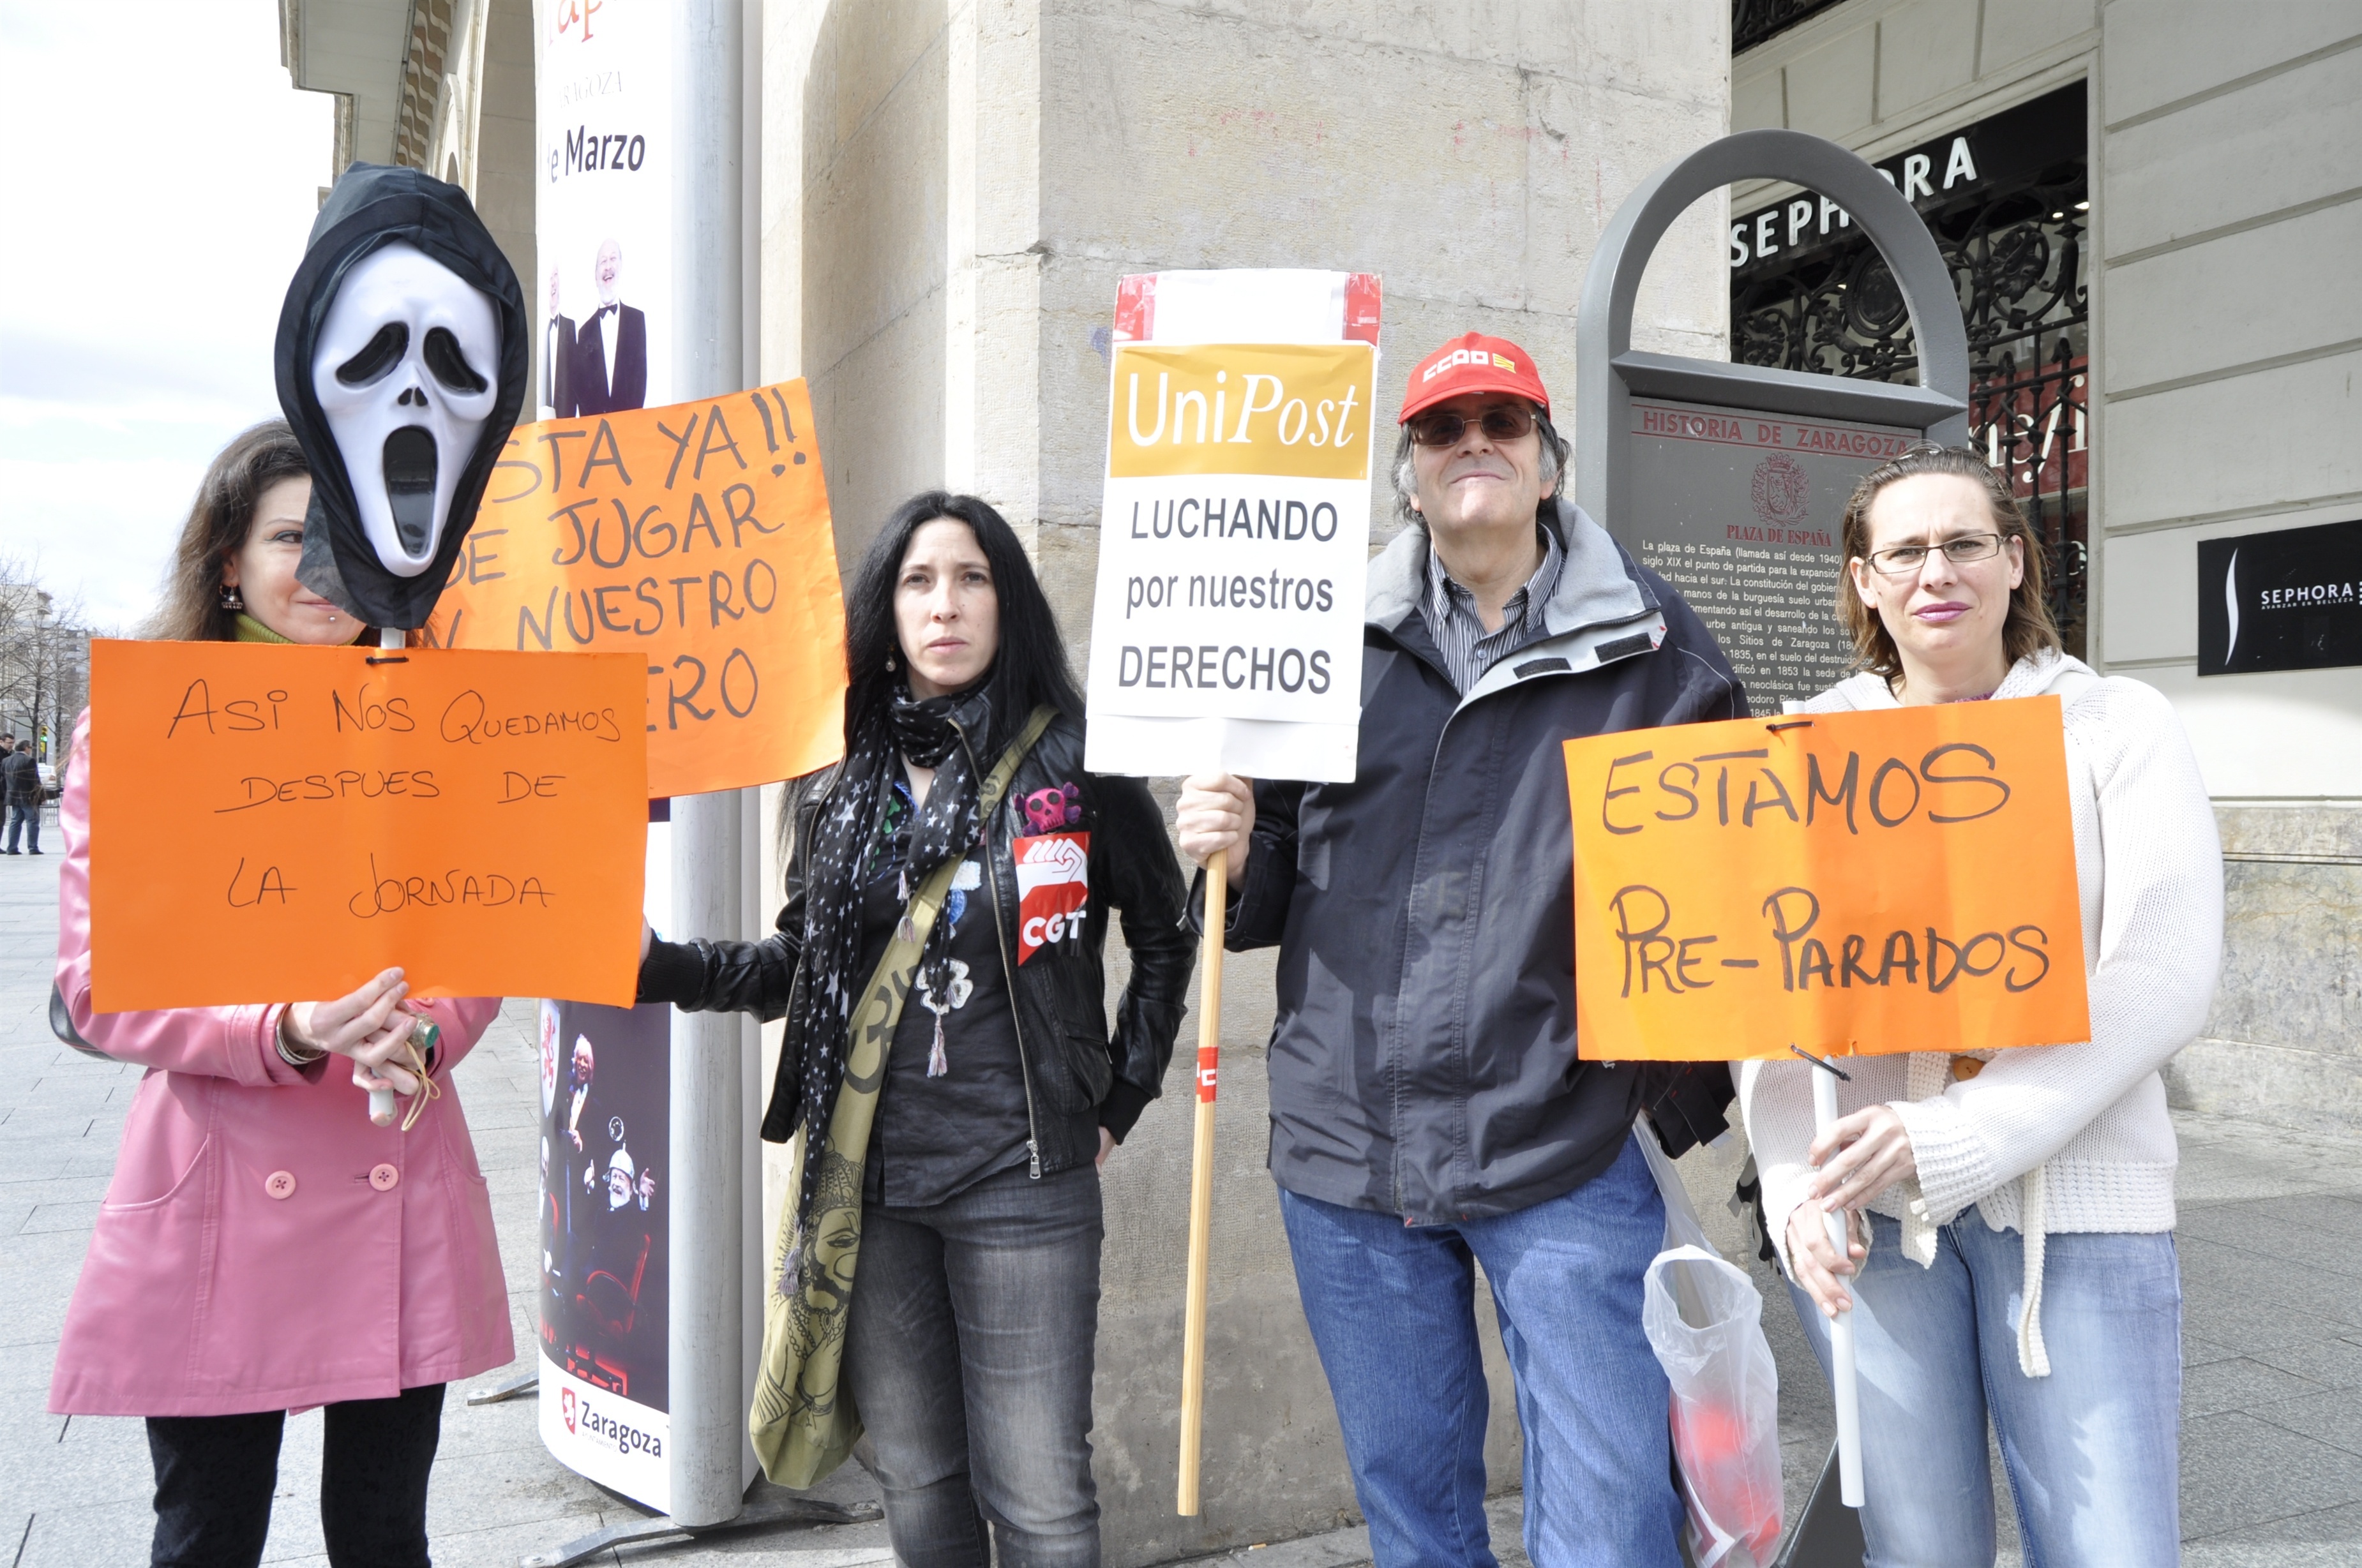 Trabajadores de Unipost se manifiestan contra el ERTE, que afecta a 200 personas en la ciudad